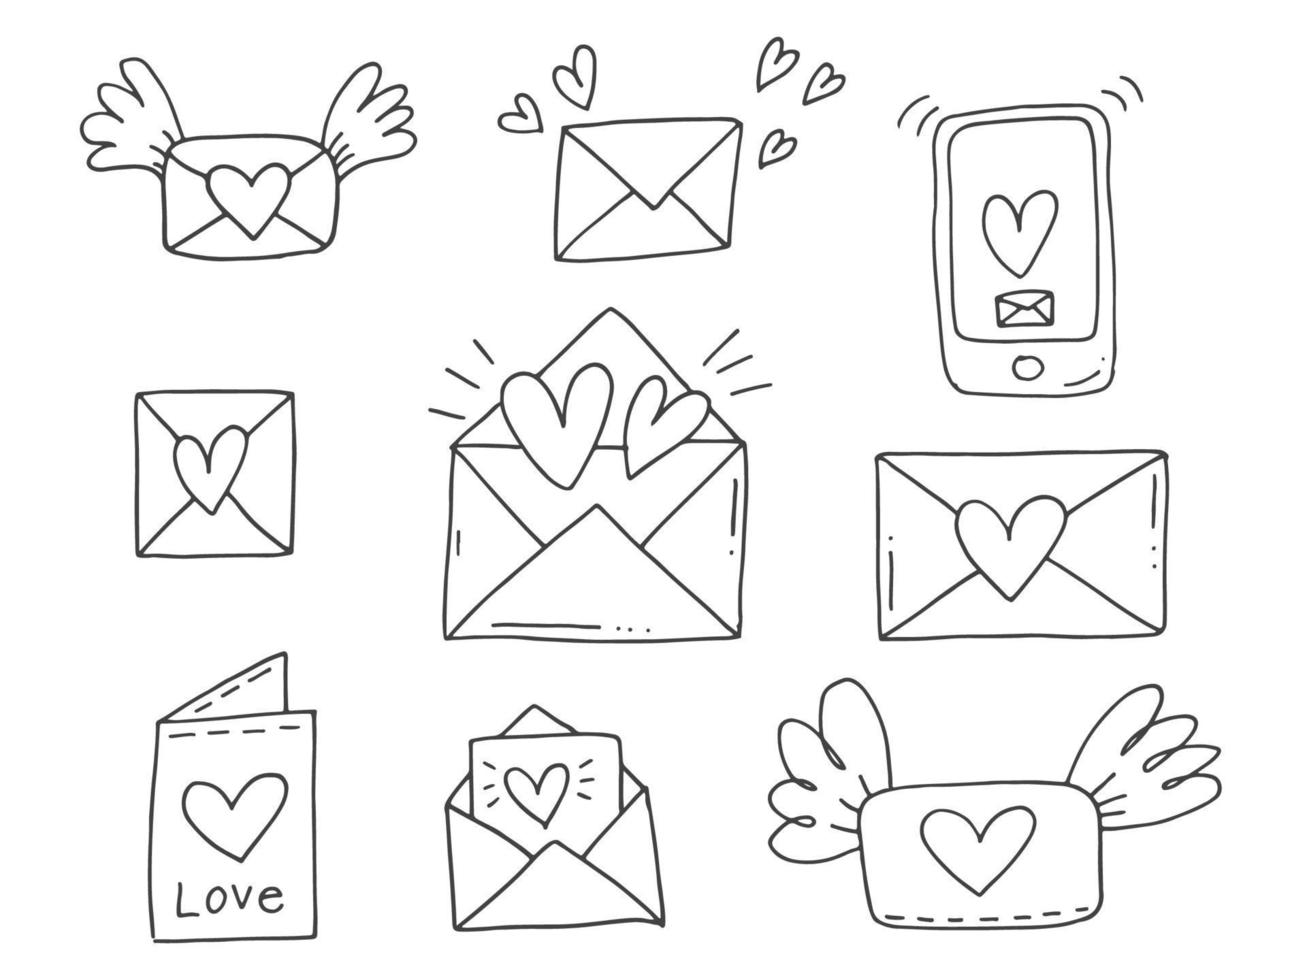 conjunto de elementos de doodle bonitos desenhados à mão sobre o amor. adesivos de mensagem para aplicativos. ícones para dia dos namorados, eventos românticos e casamento. envelopes com letras e asas e telefone com mensagem e coração. vetor